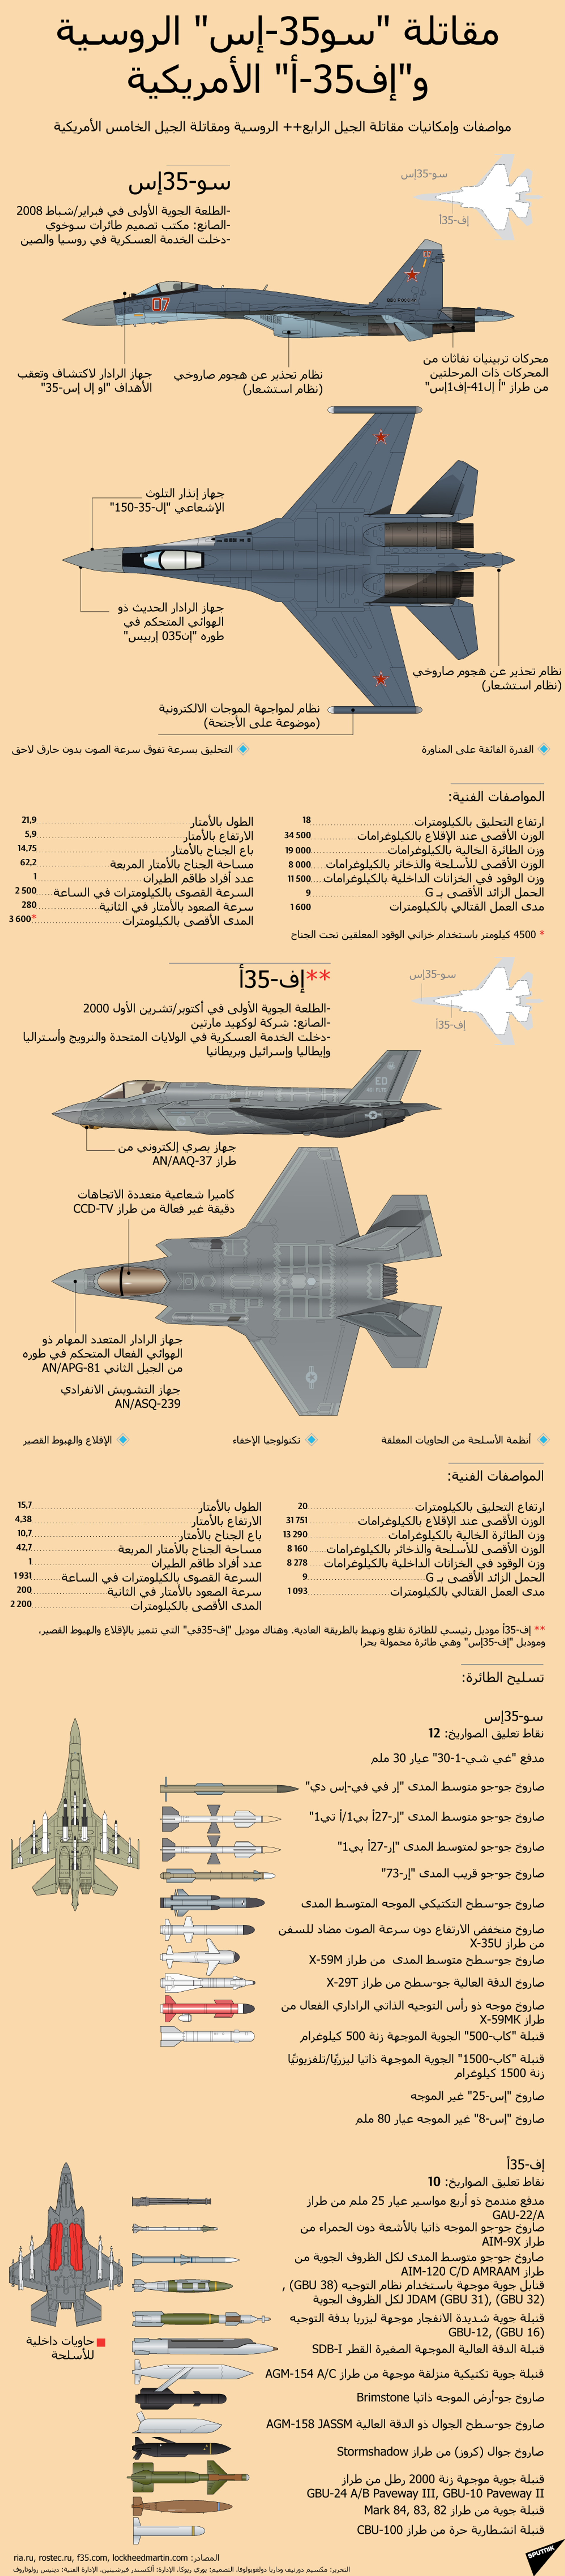 مثل شعبي يوضح سبب فشل مشروع إنتاج طائرات إف-35 في أمريكا - سبوتنيك عربي, 1920, 15.03.2021